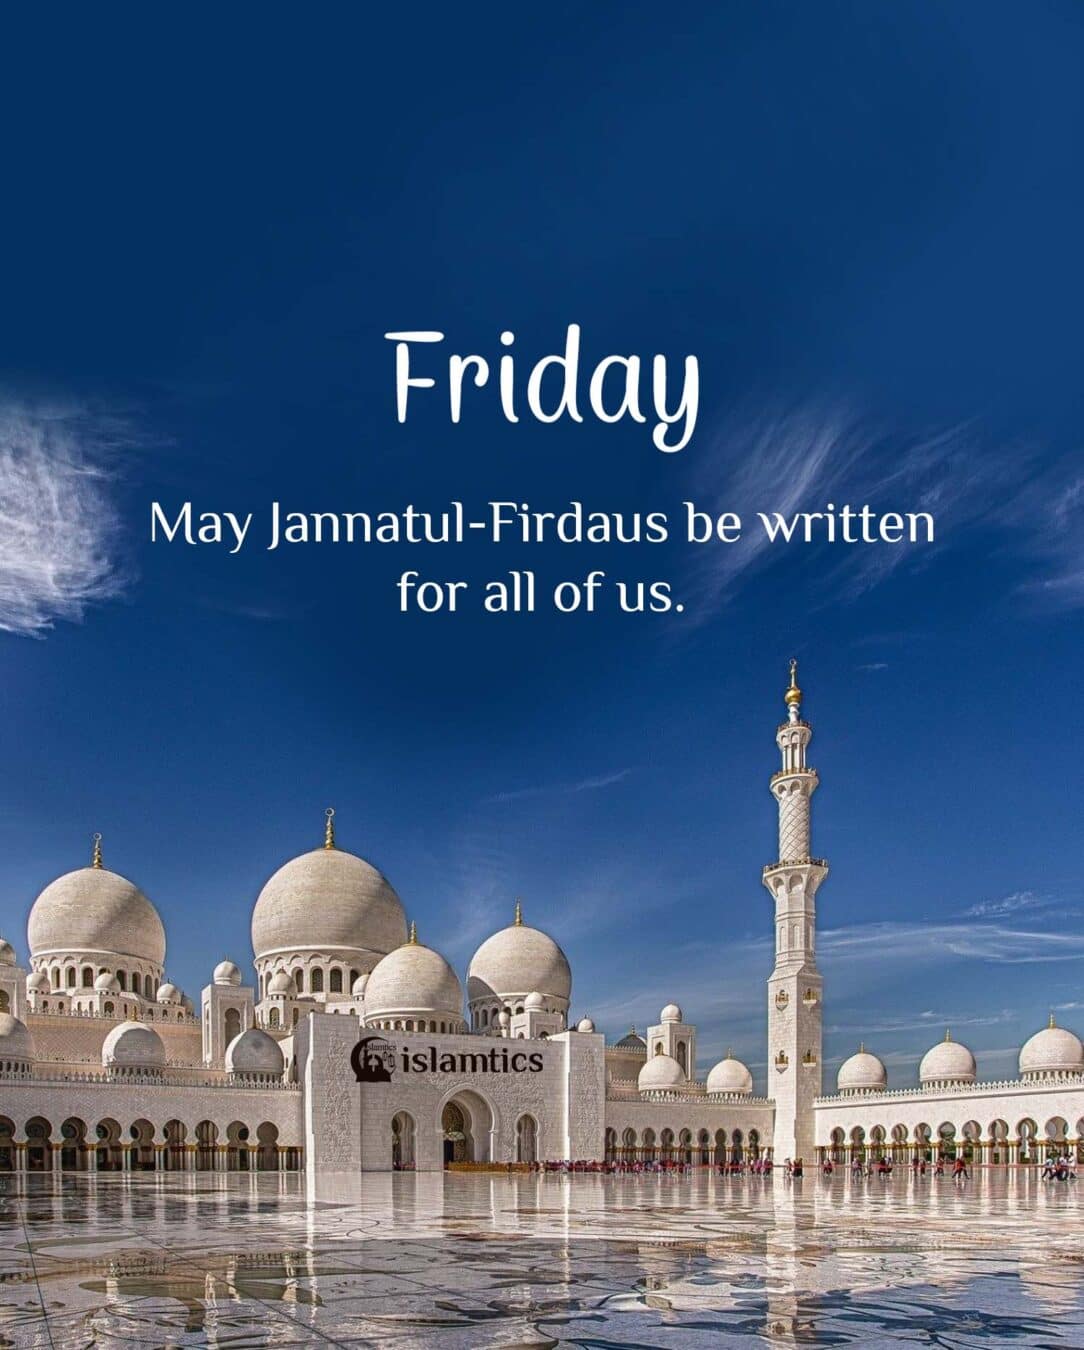 May Jannatul-Firdaus be written for all of us.